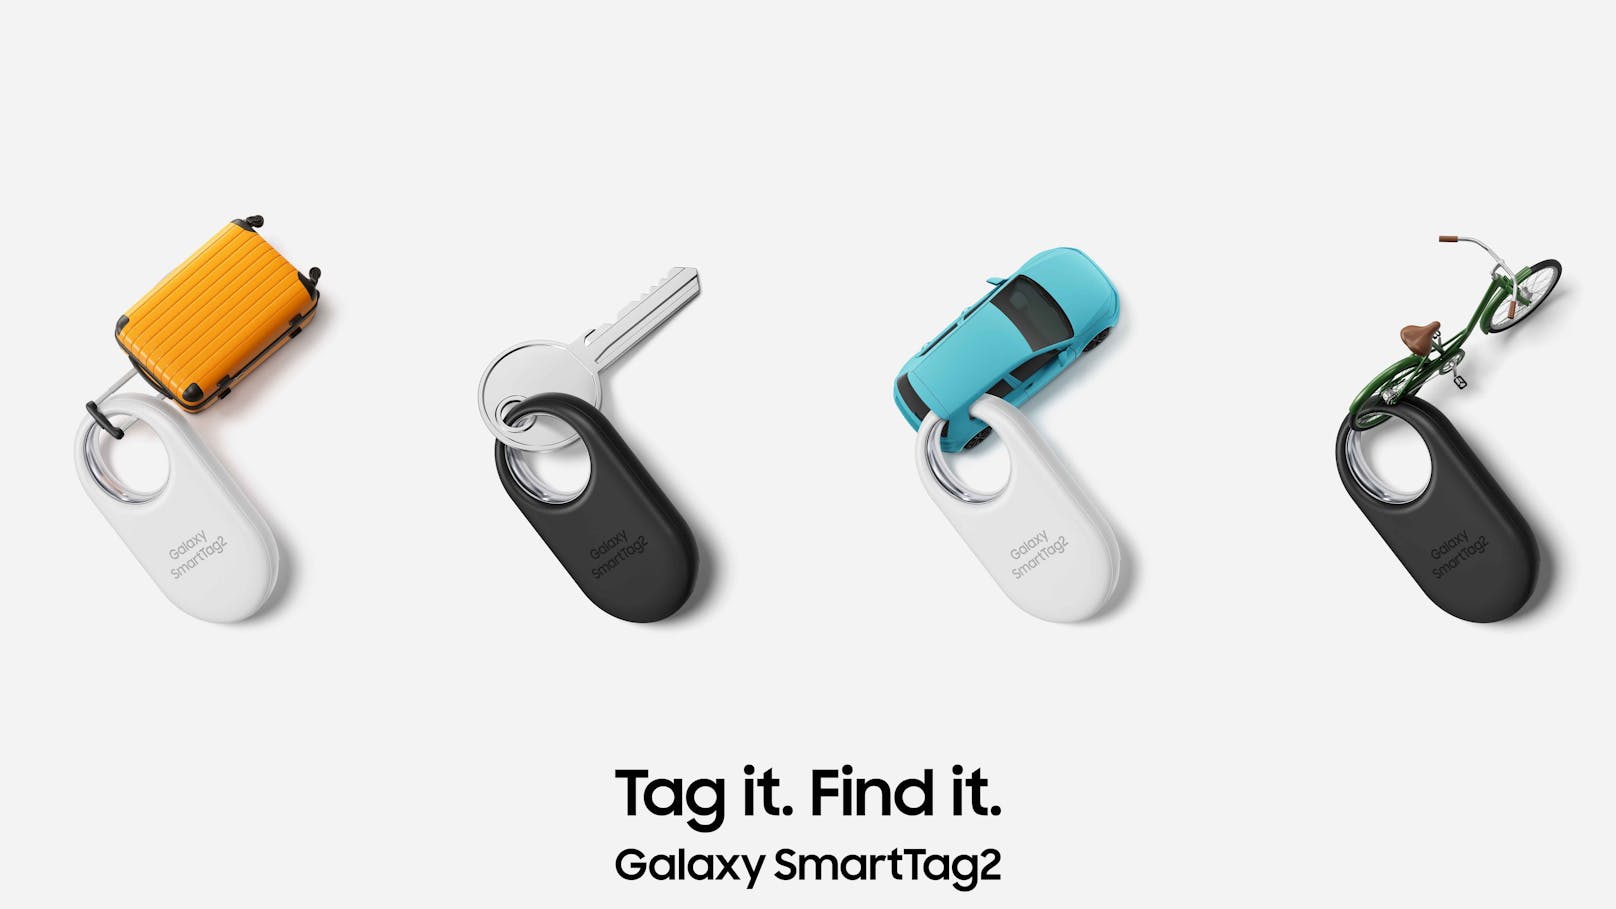 Wertsachen besser im Blick behalten mit den neuen Samsung Galaxy SmartTag2.